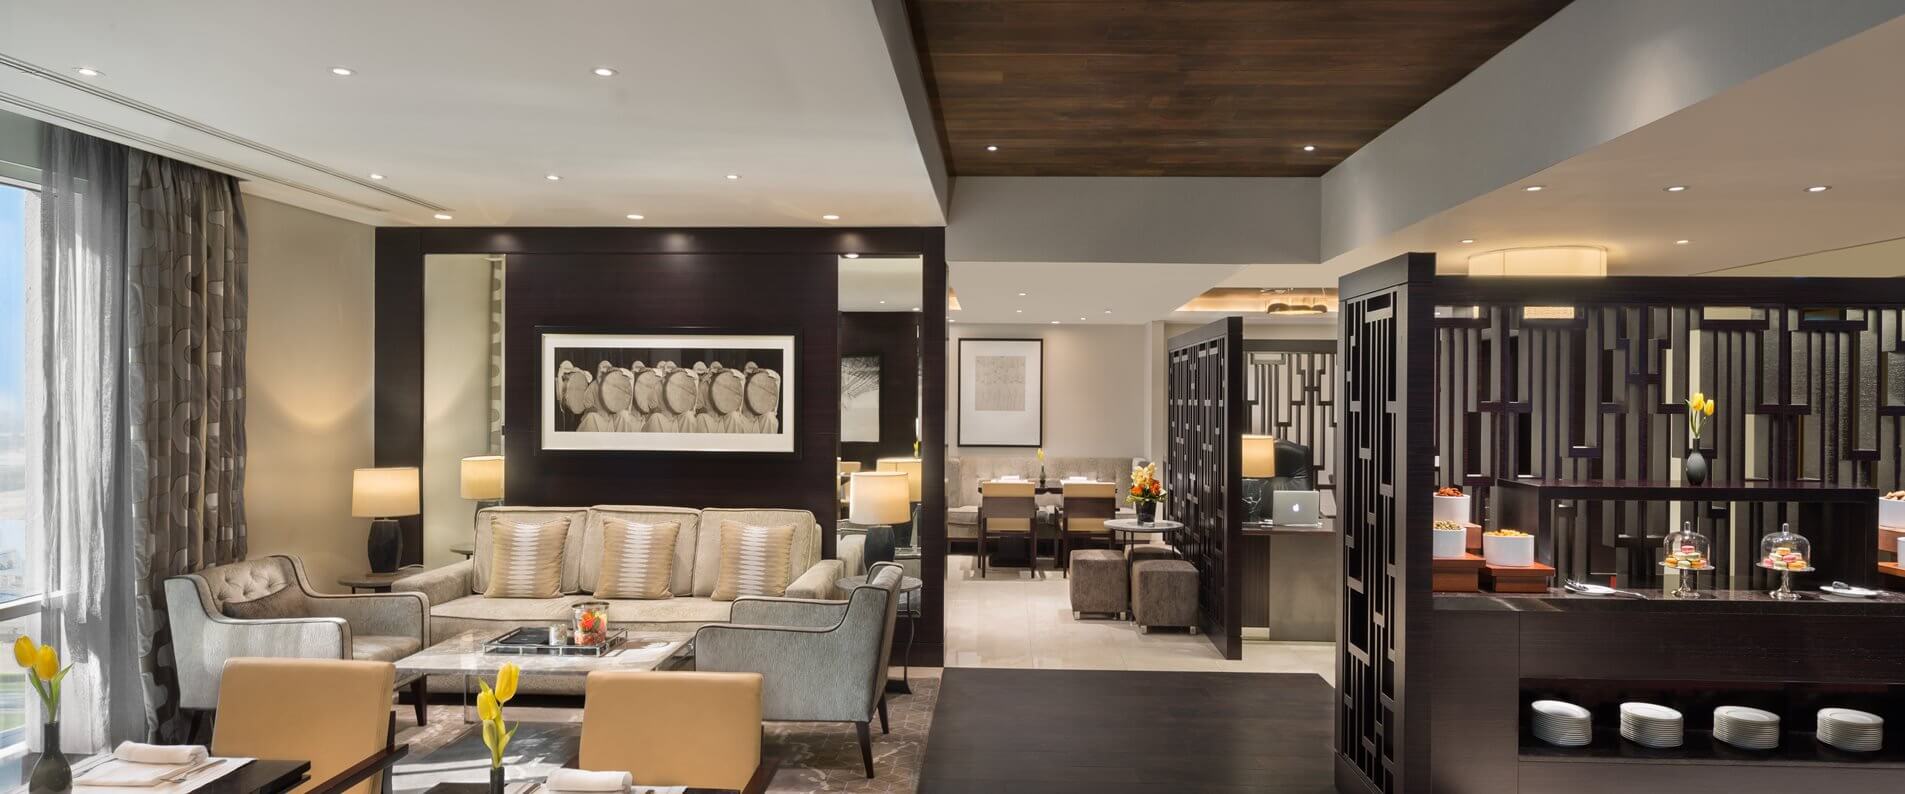 Kempinski Hotel Mall of the Emirates Executive Club Lounge Seating Area